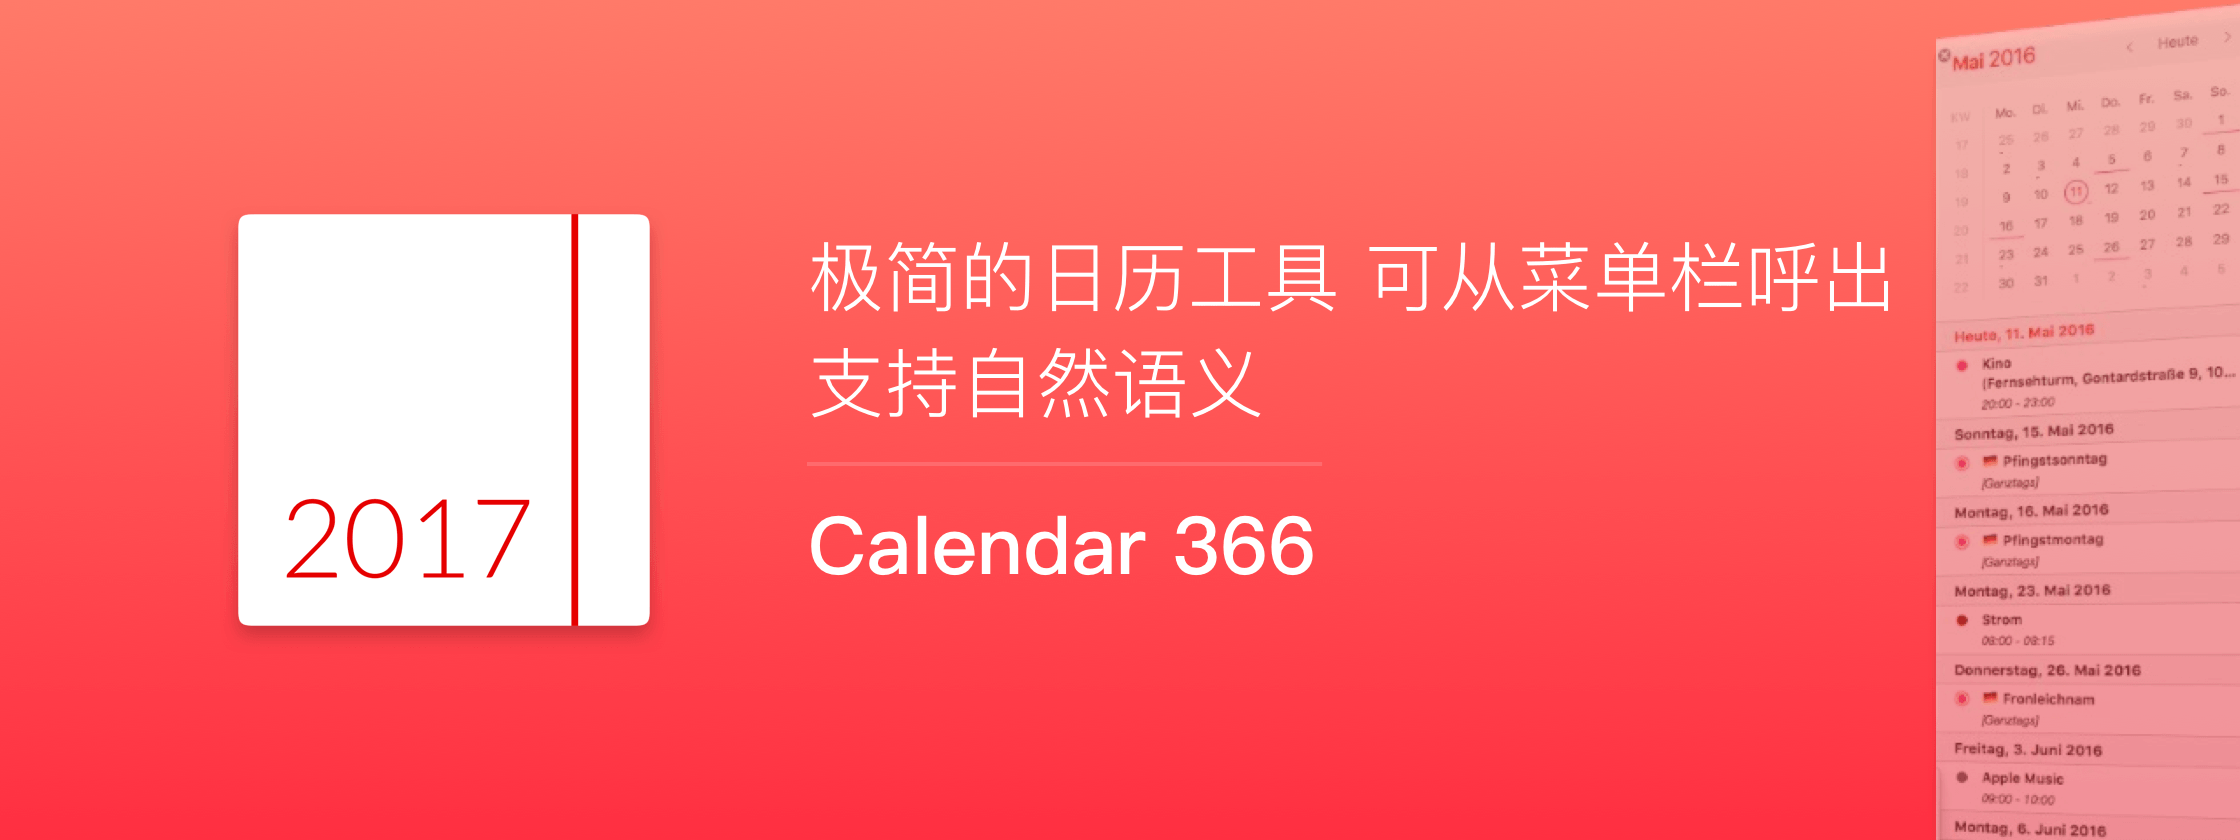 Calendar 366，轻量简洁的 Mac 日历工具，支持自然语义